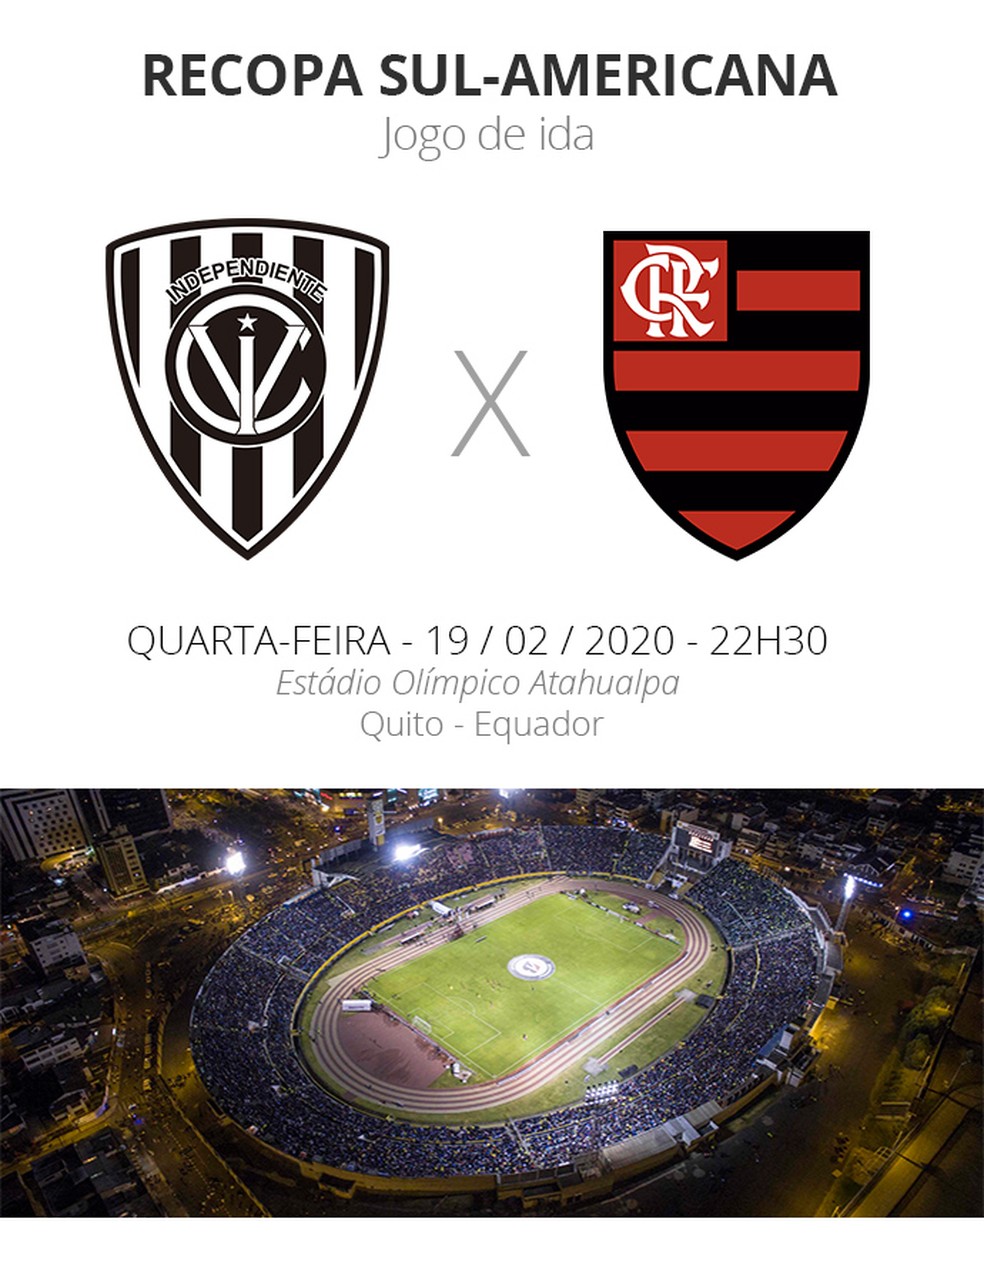 Del Valle x Flamengo — Foto: Infoesporte